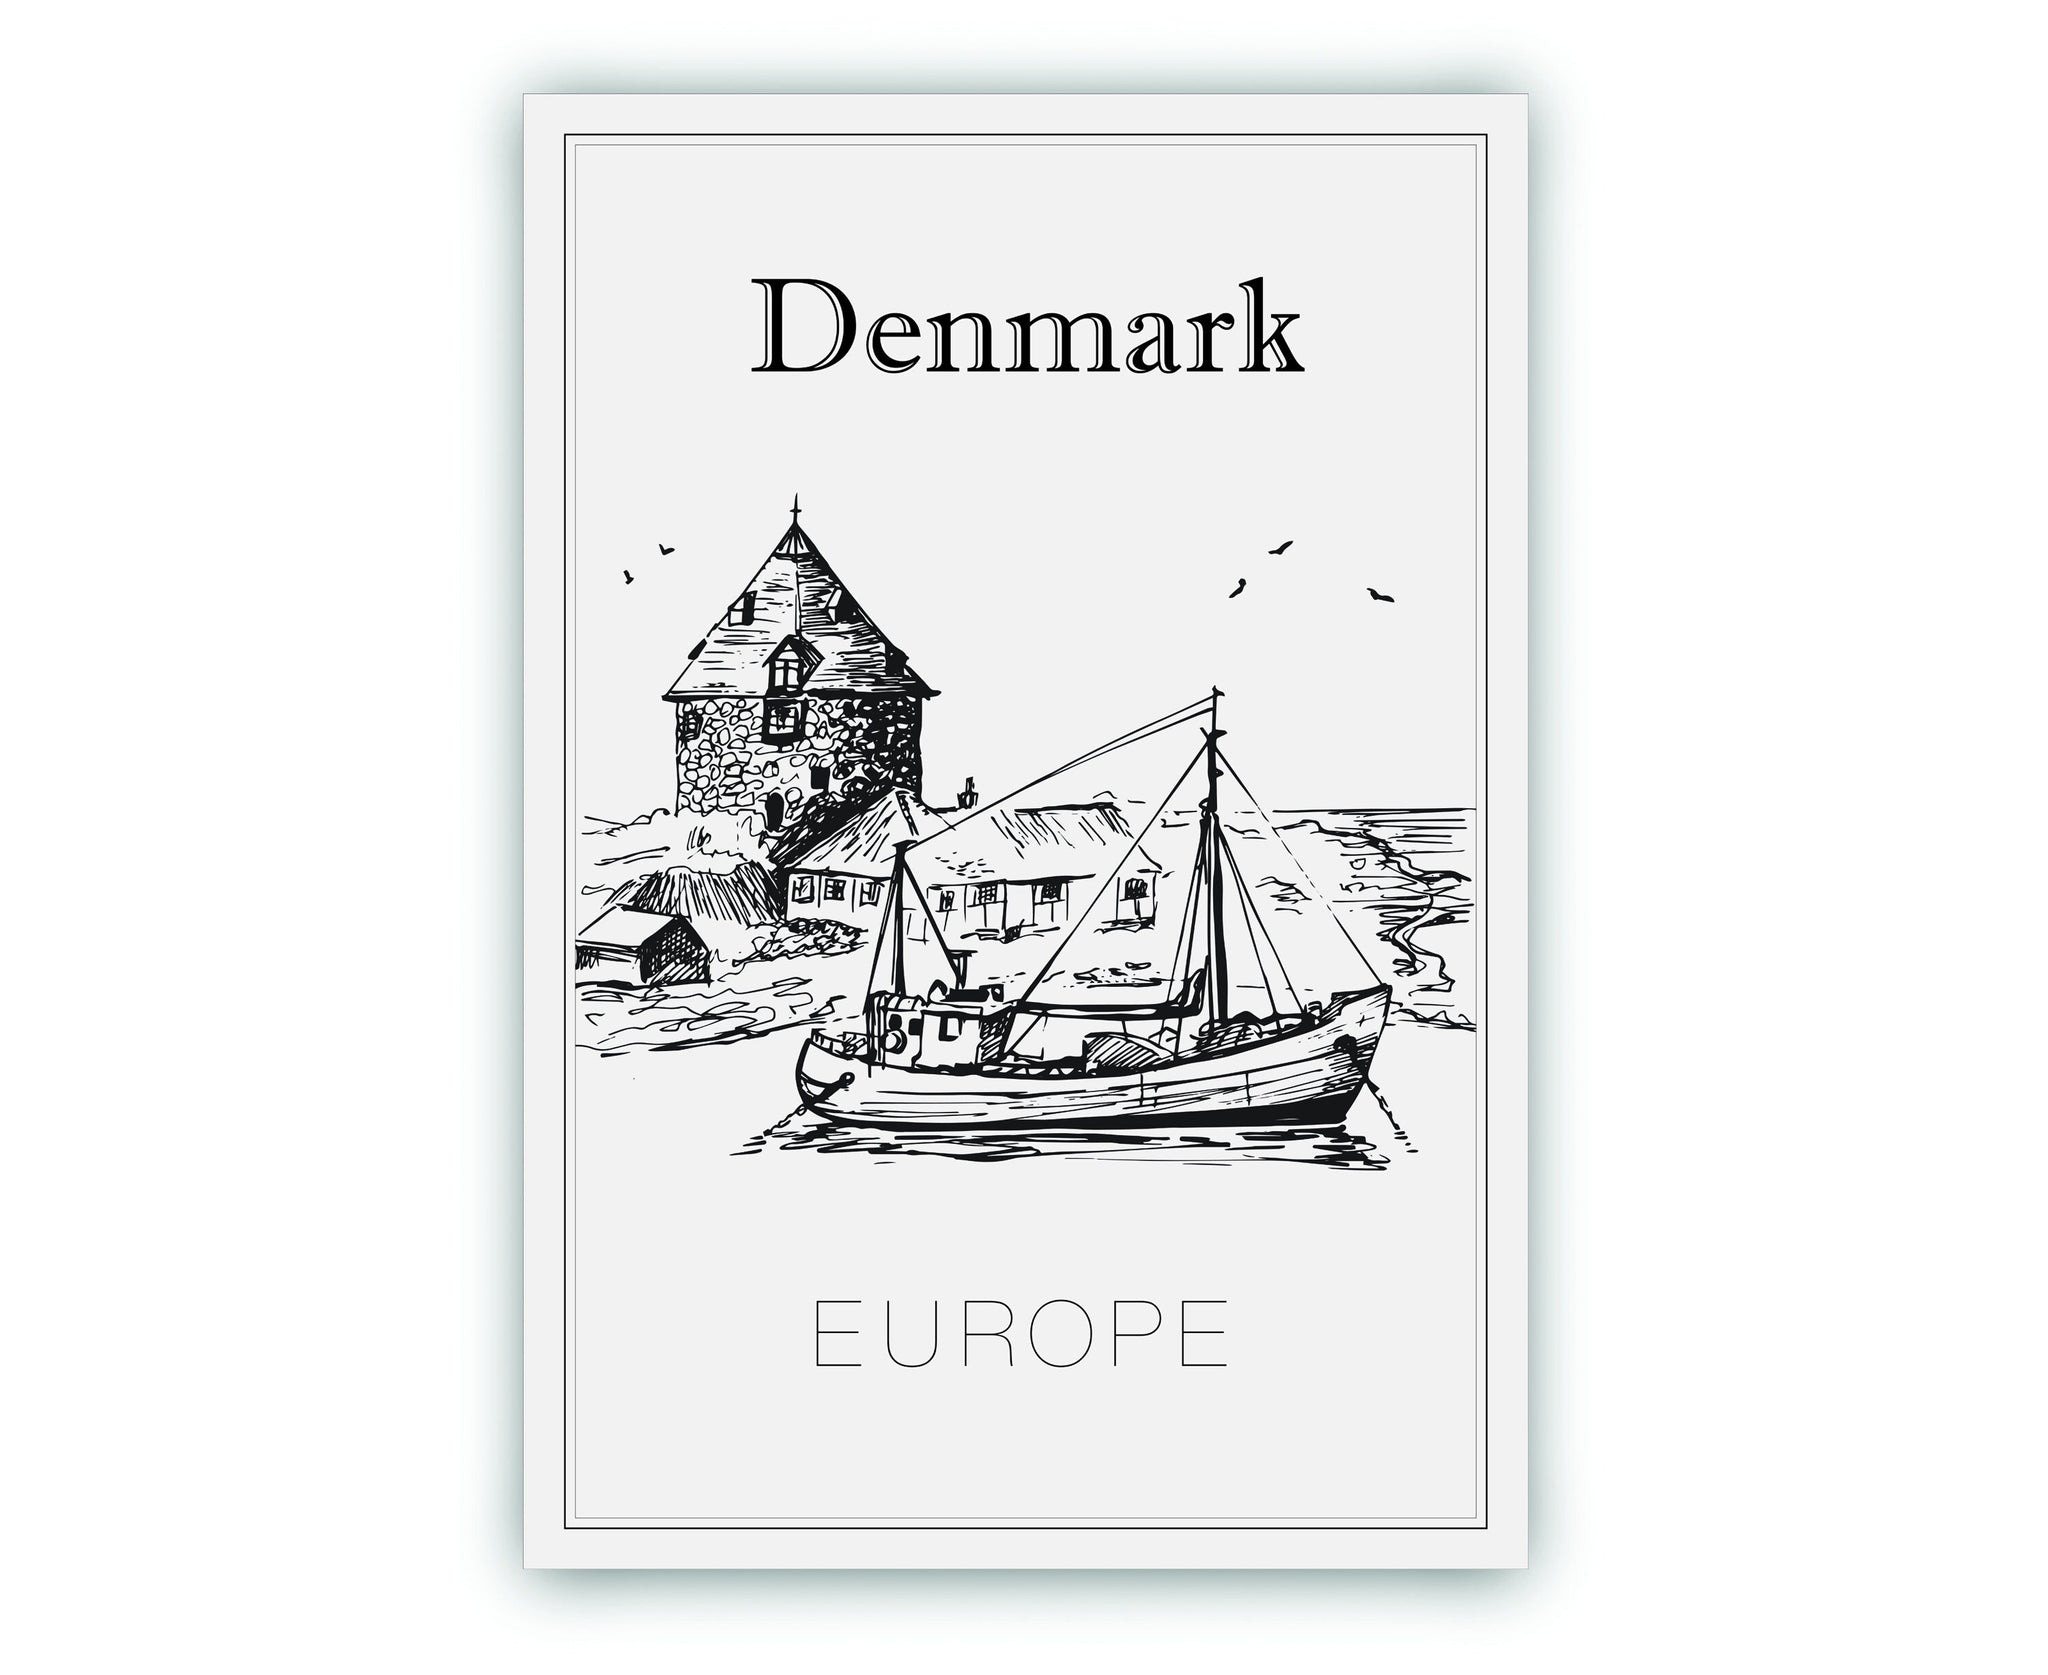 Hand Drawn Poster, Denmark Travel Poster, Denmark Europe Poster Wall Art, Denmark Cityscape and Landmark Map, City Map Poster For Home